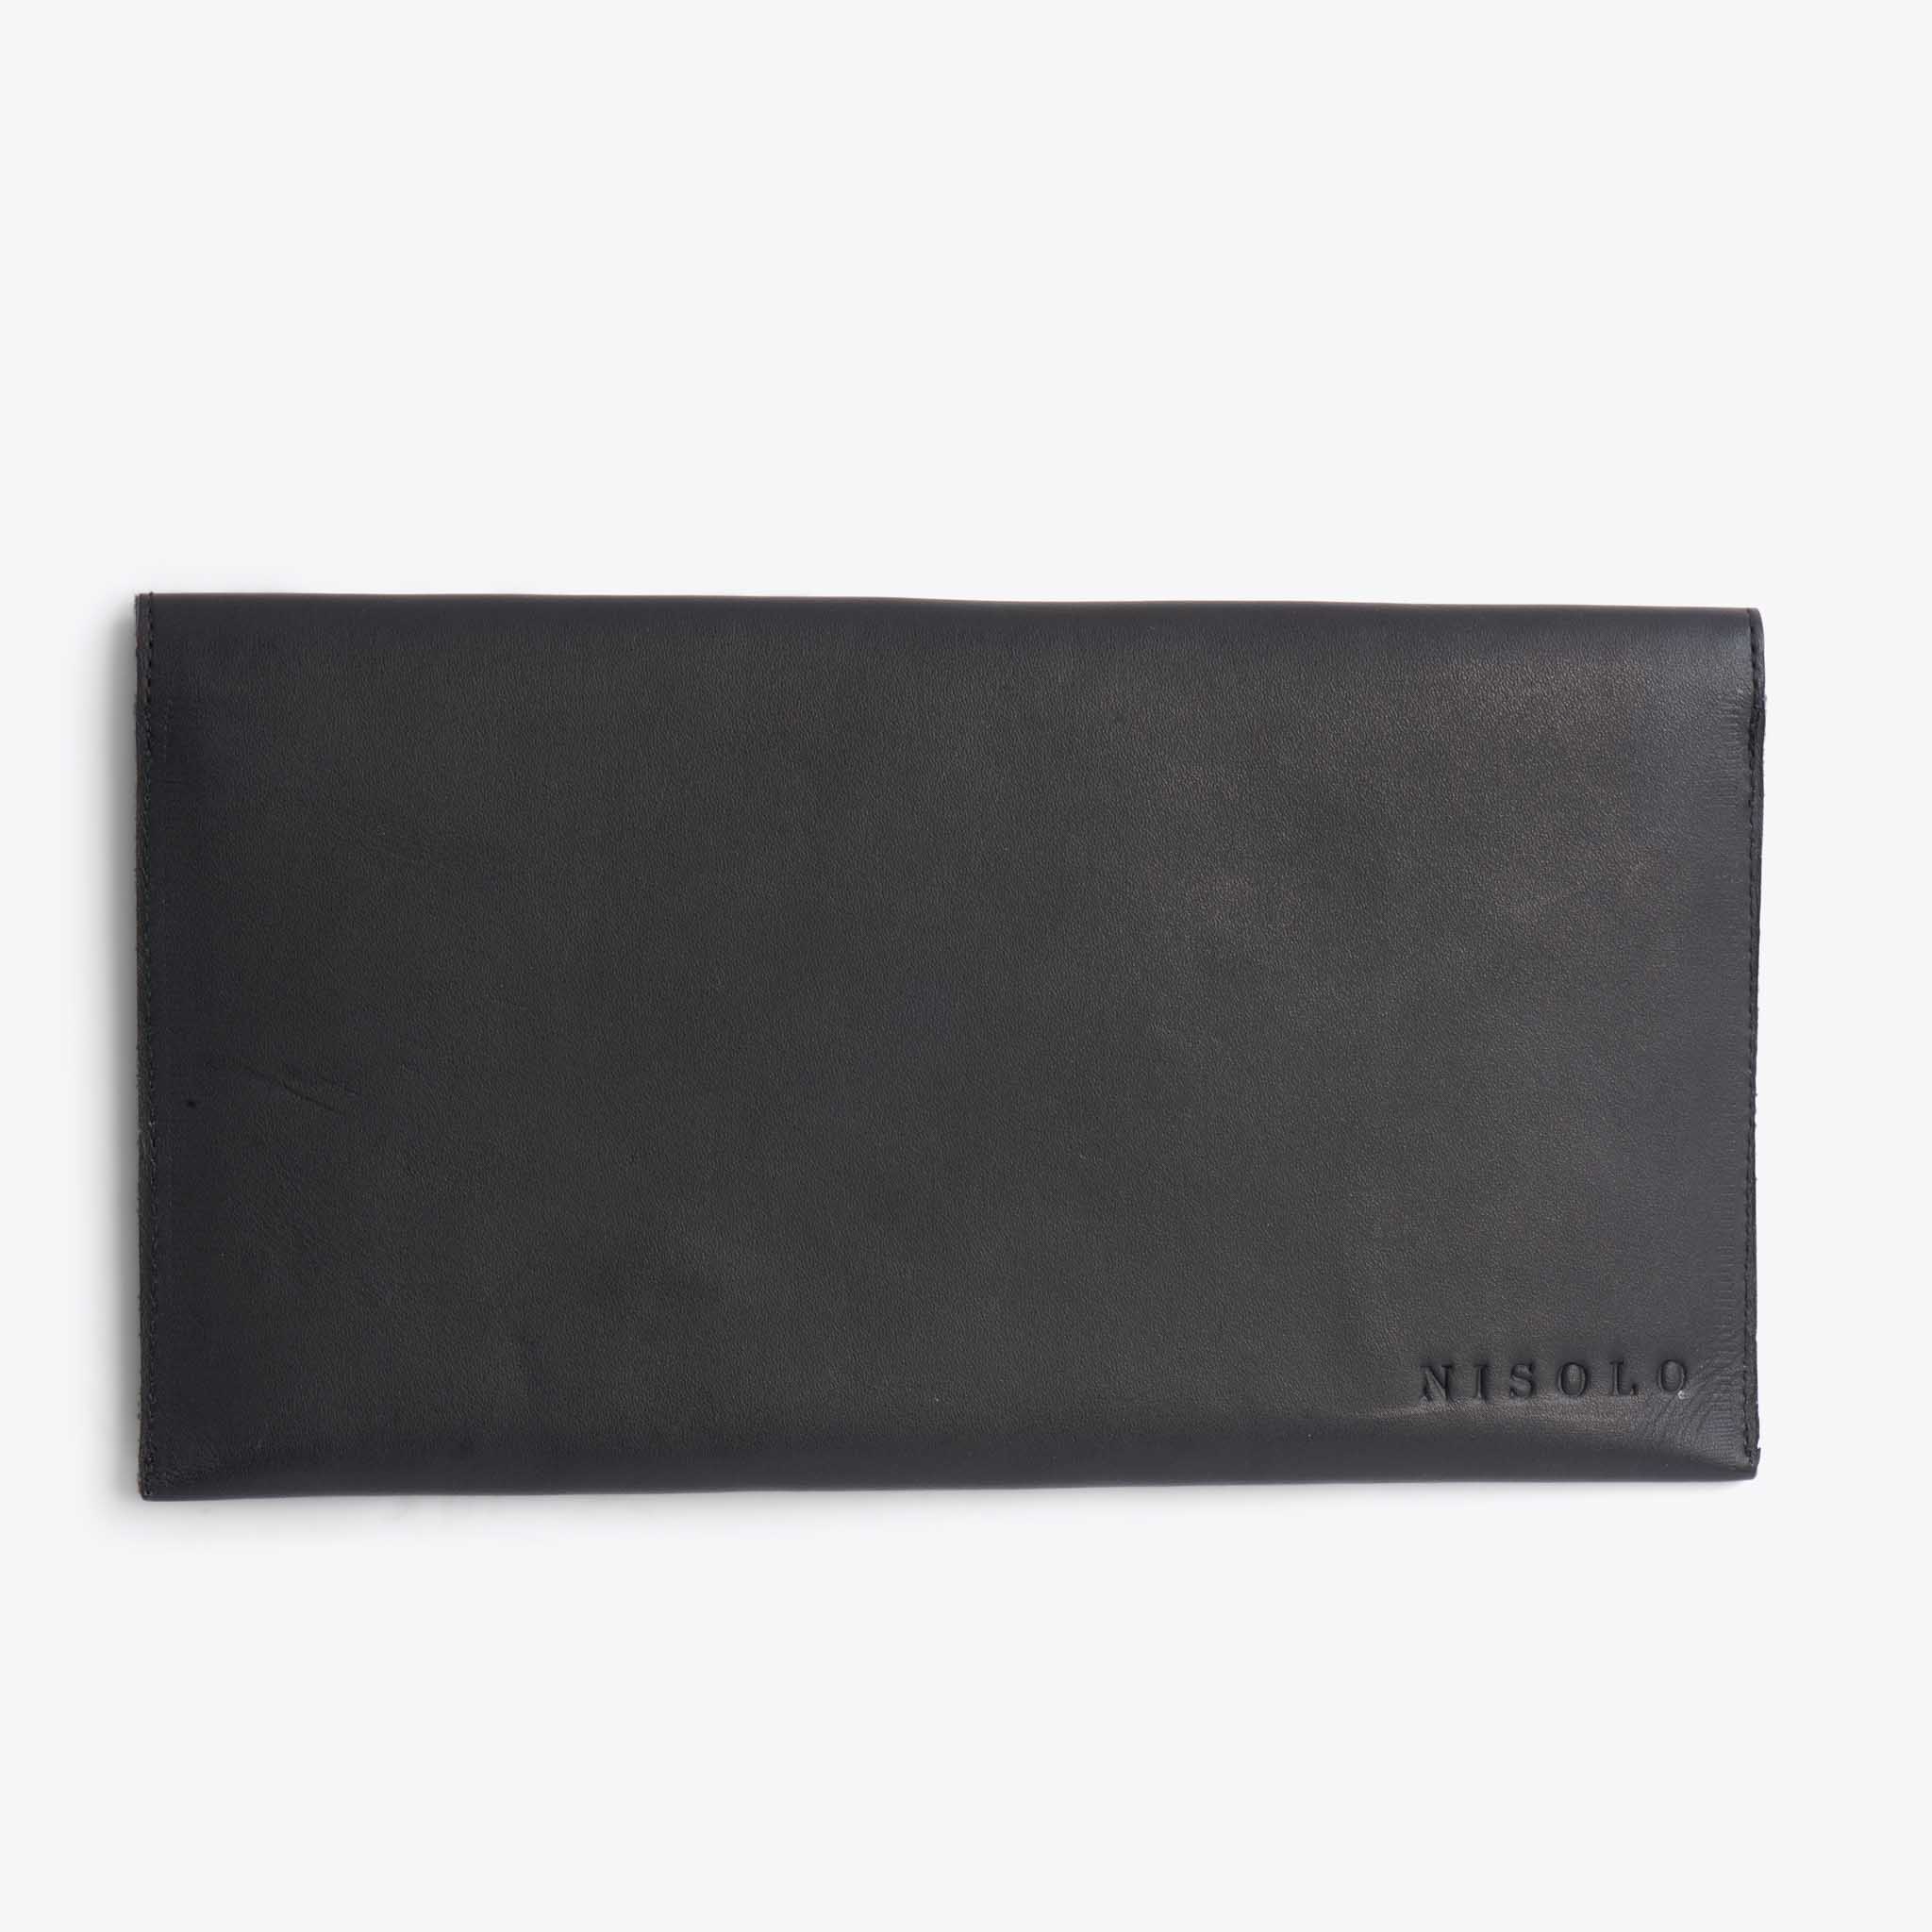 Nisolo Women's Envelope Clutch Black